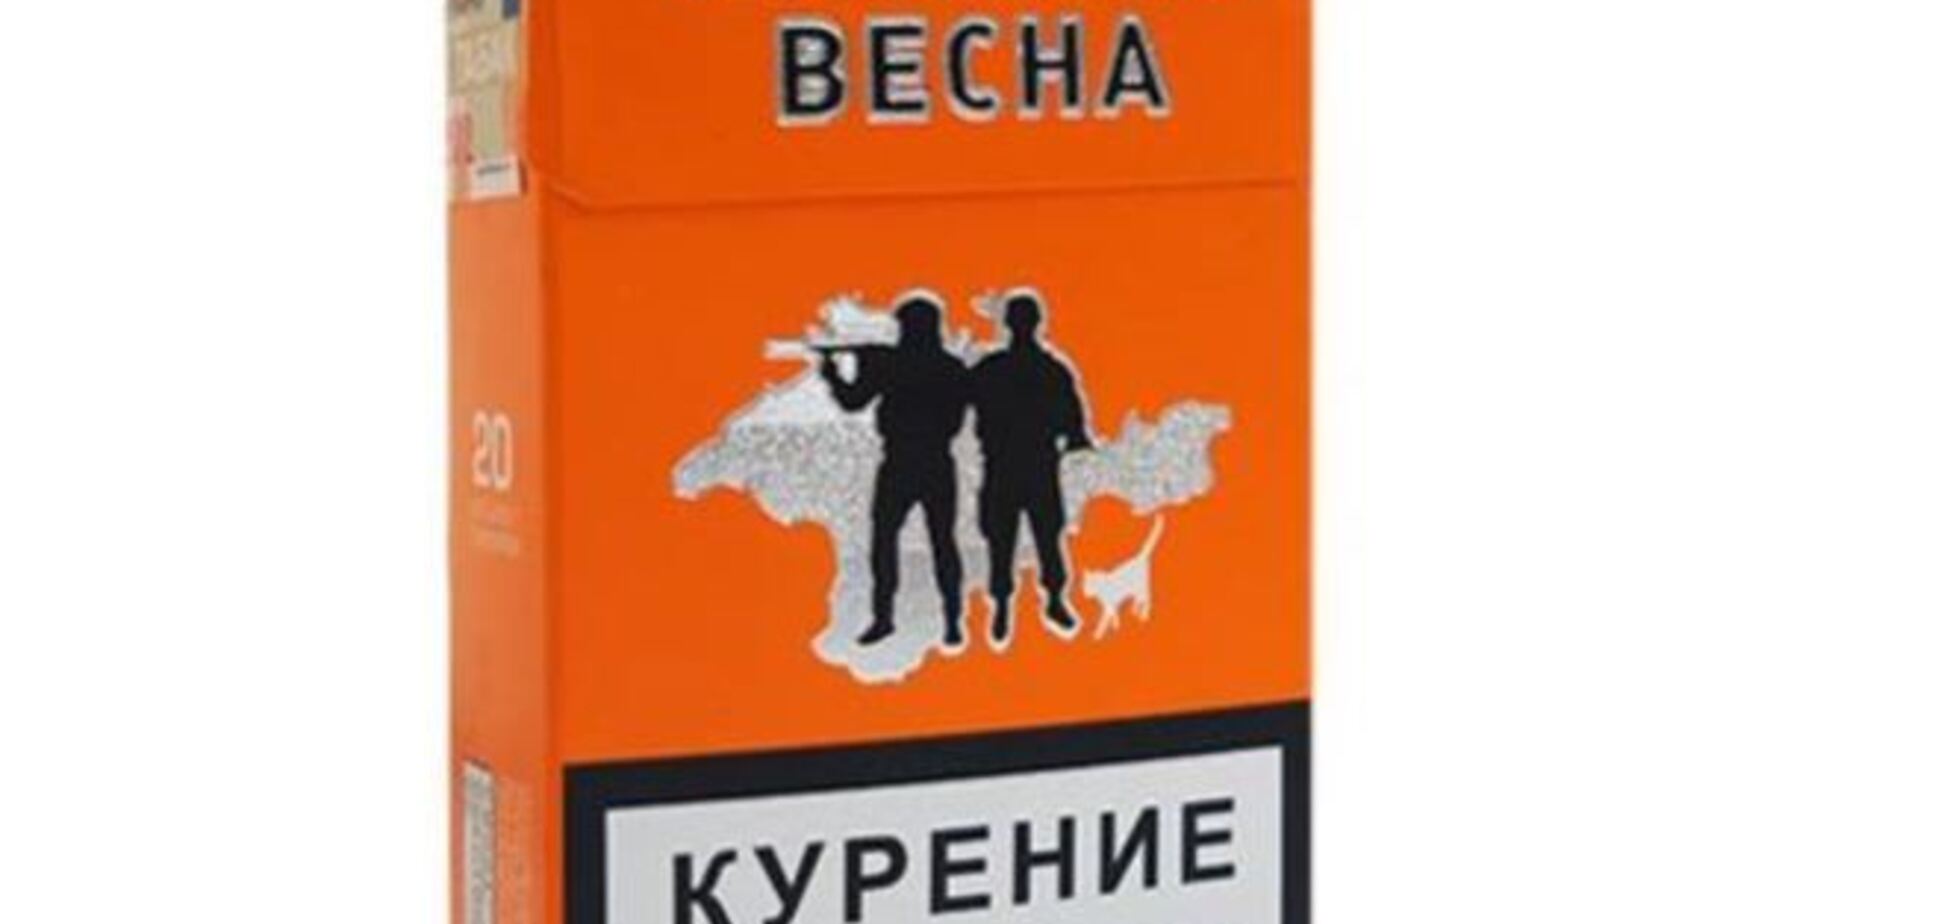 В России выпустили сигареты 'Русская весна': на пачках изображены зеленые человечки на фоне 'Крымнаш'